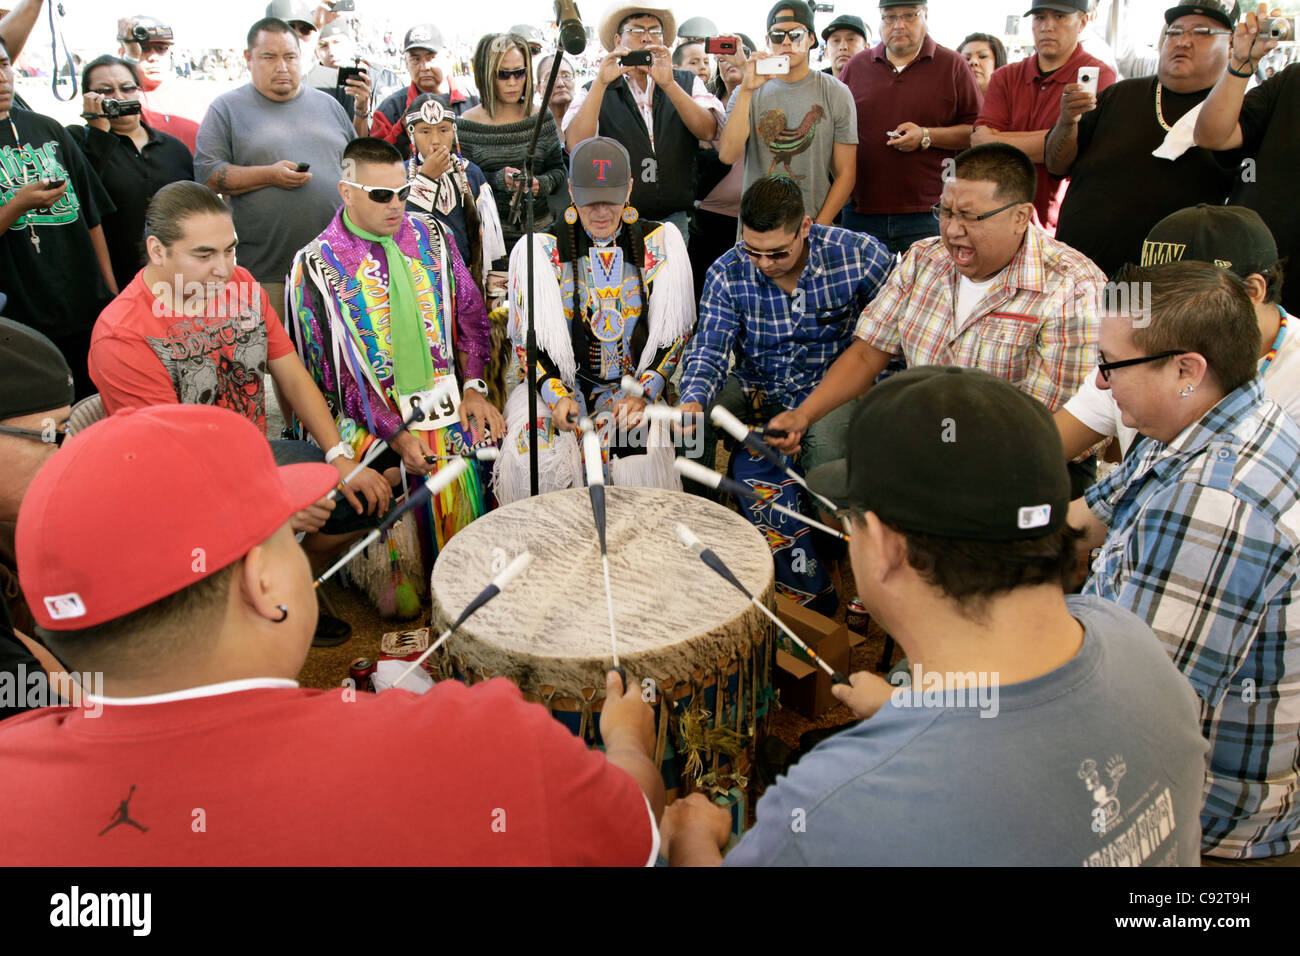 Scottsdale, Arizona - nördlichen Cree Trommelgruppe bei Red Mountain Eagle Powwow in der Pima-Maricopa inder Gemeinschaft statt. Stockfoto